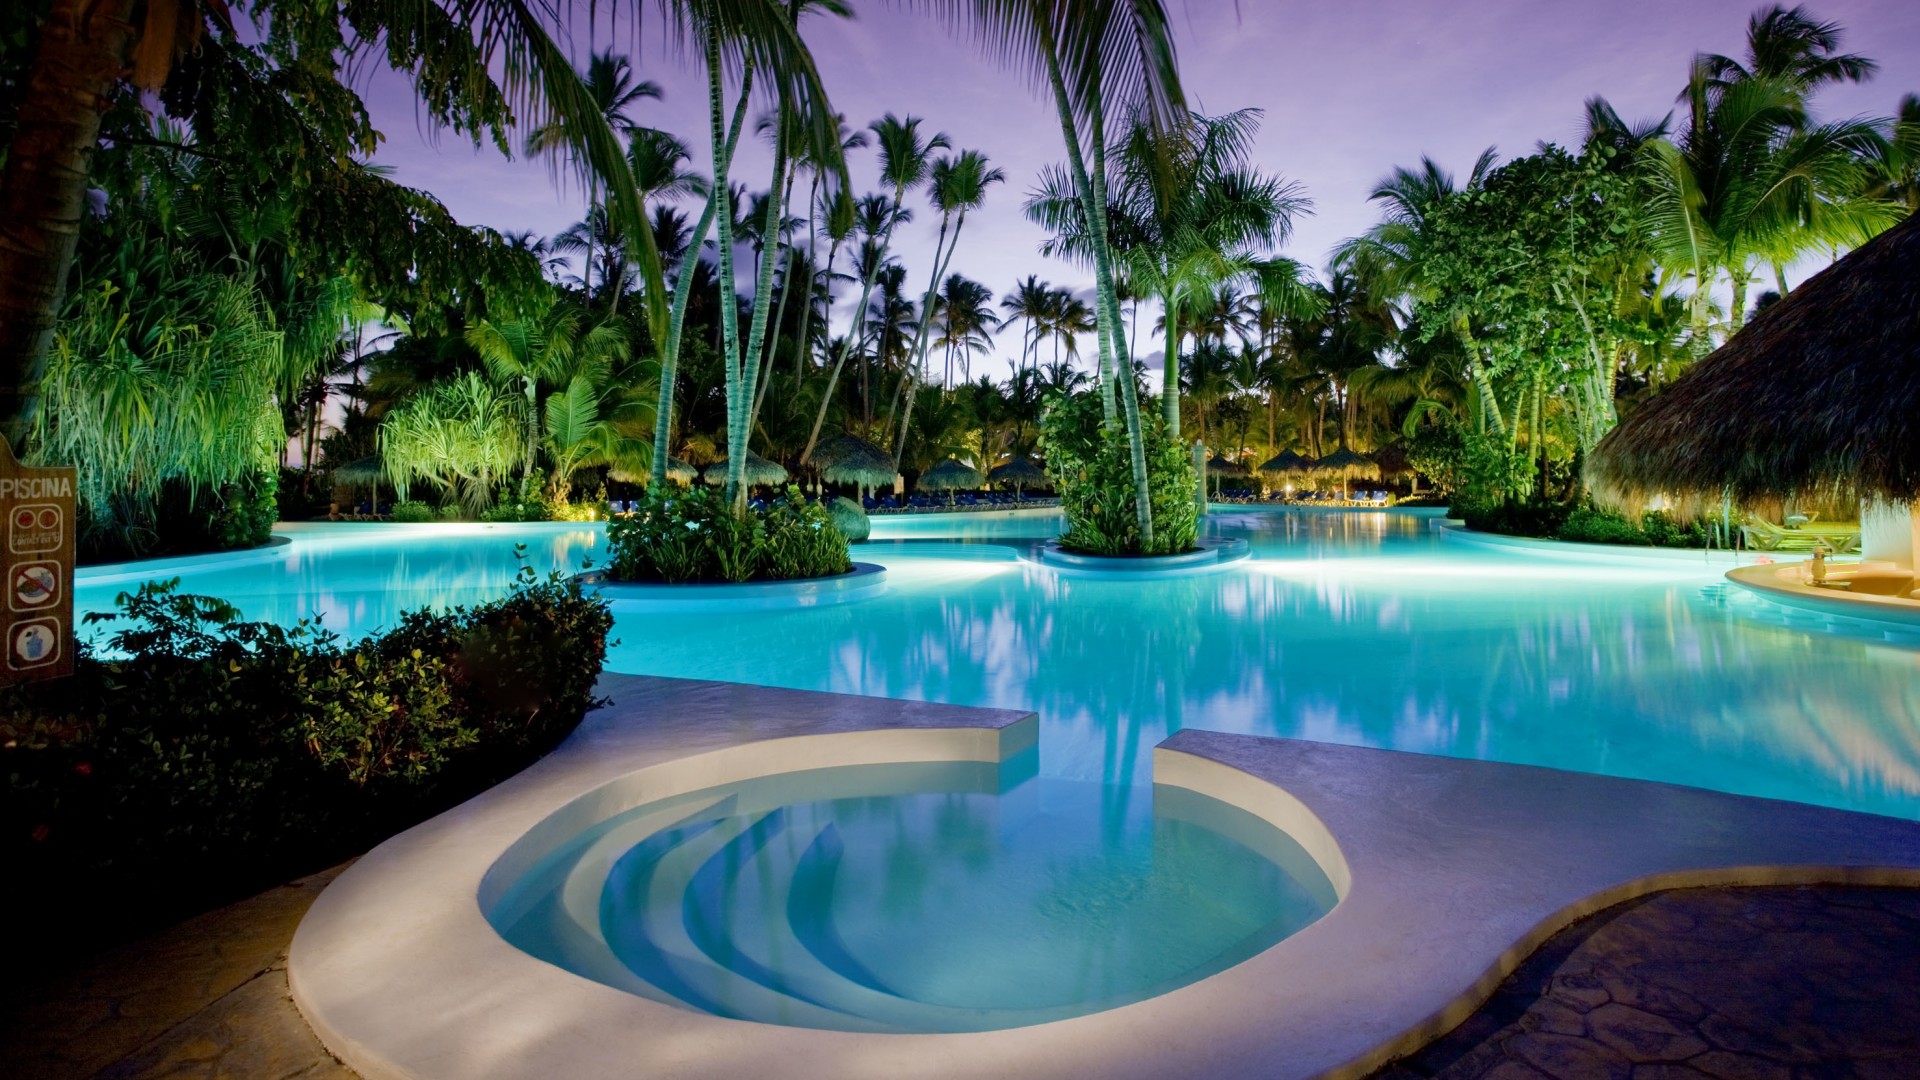 游泳池,酒店,玛丽,加勒比热带,宽屏风景壁纸